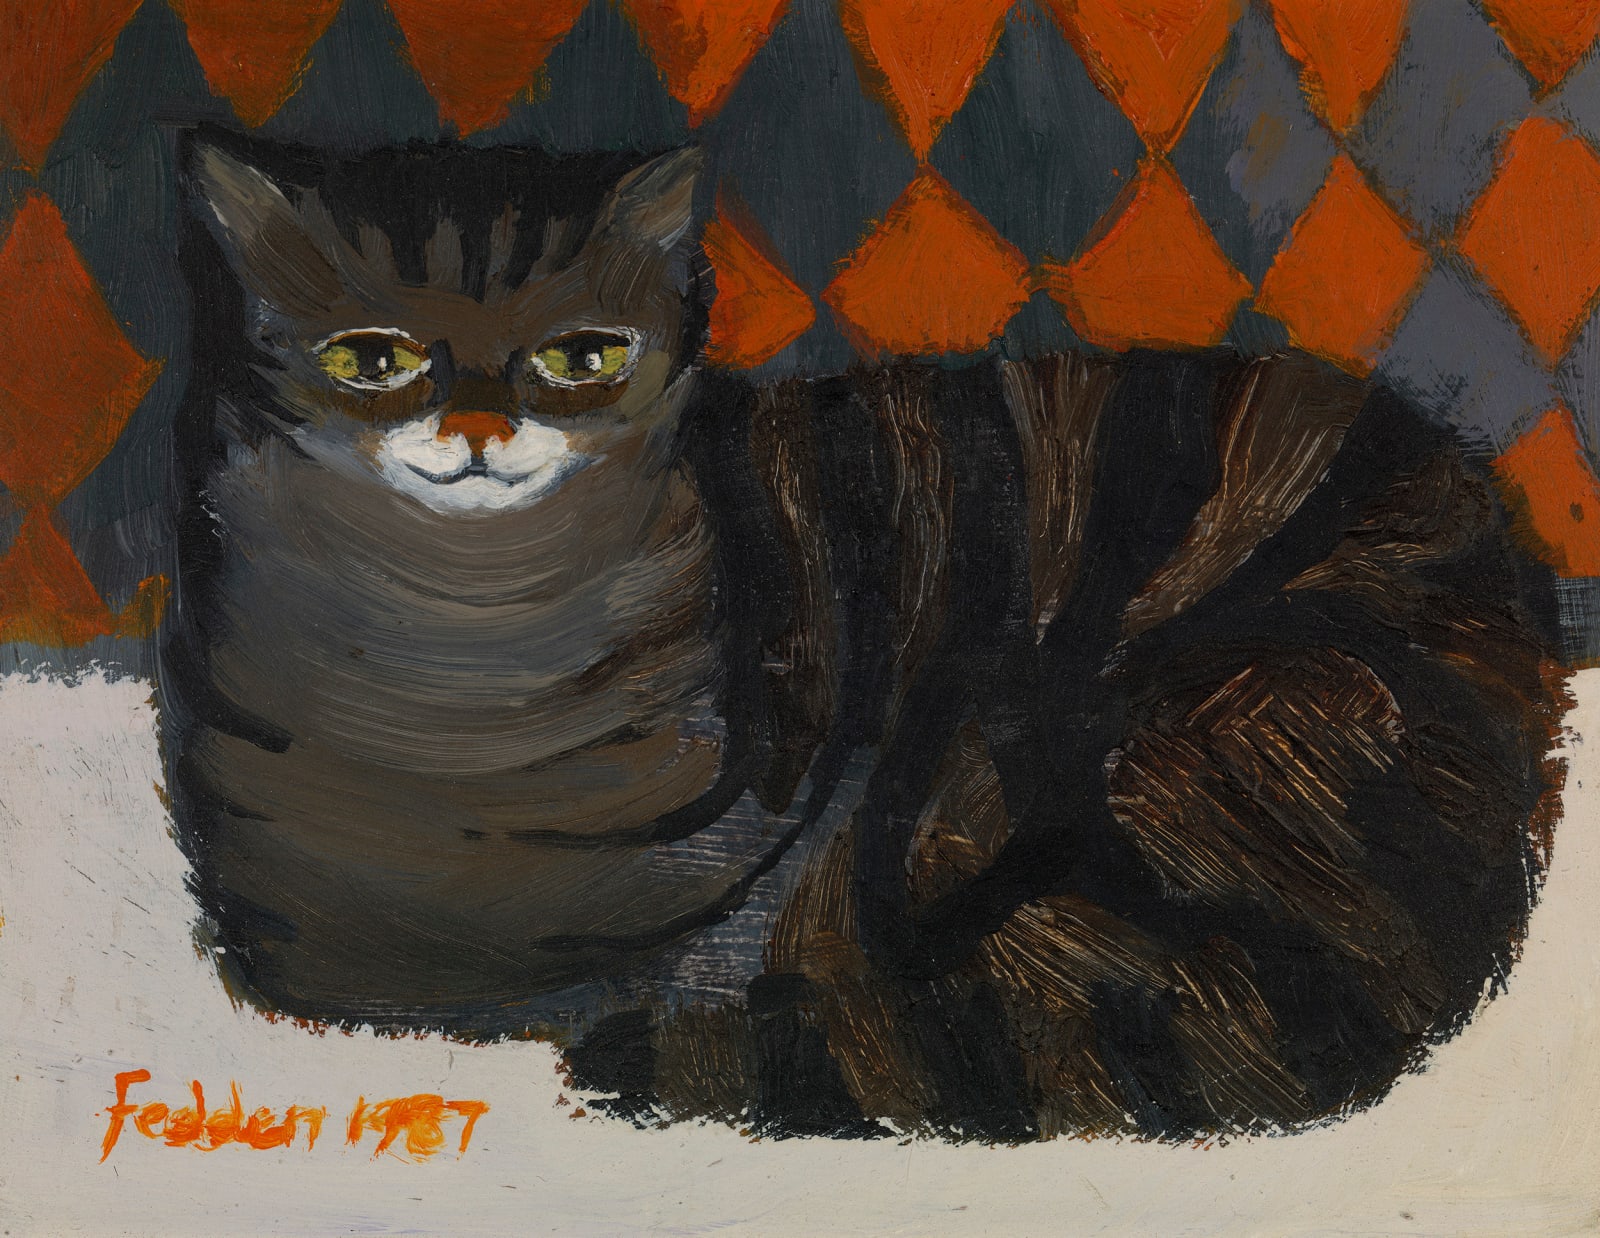 Mary Fedden, Tabby Cat, 1987